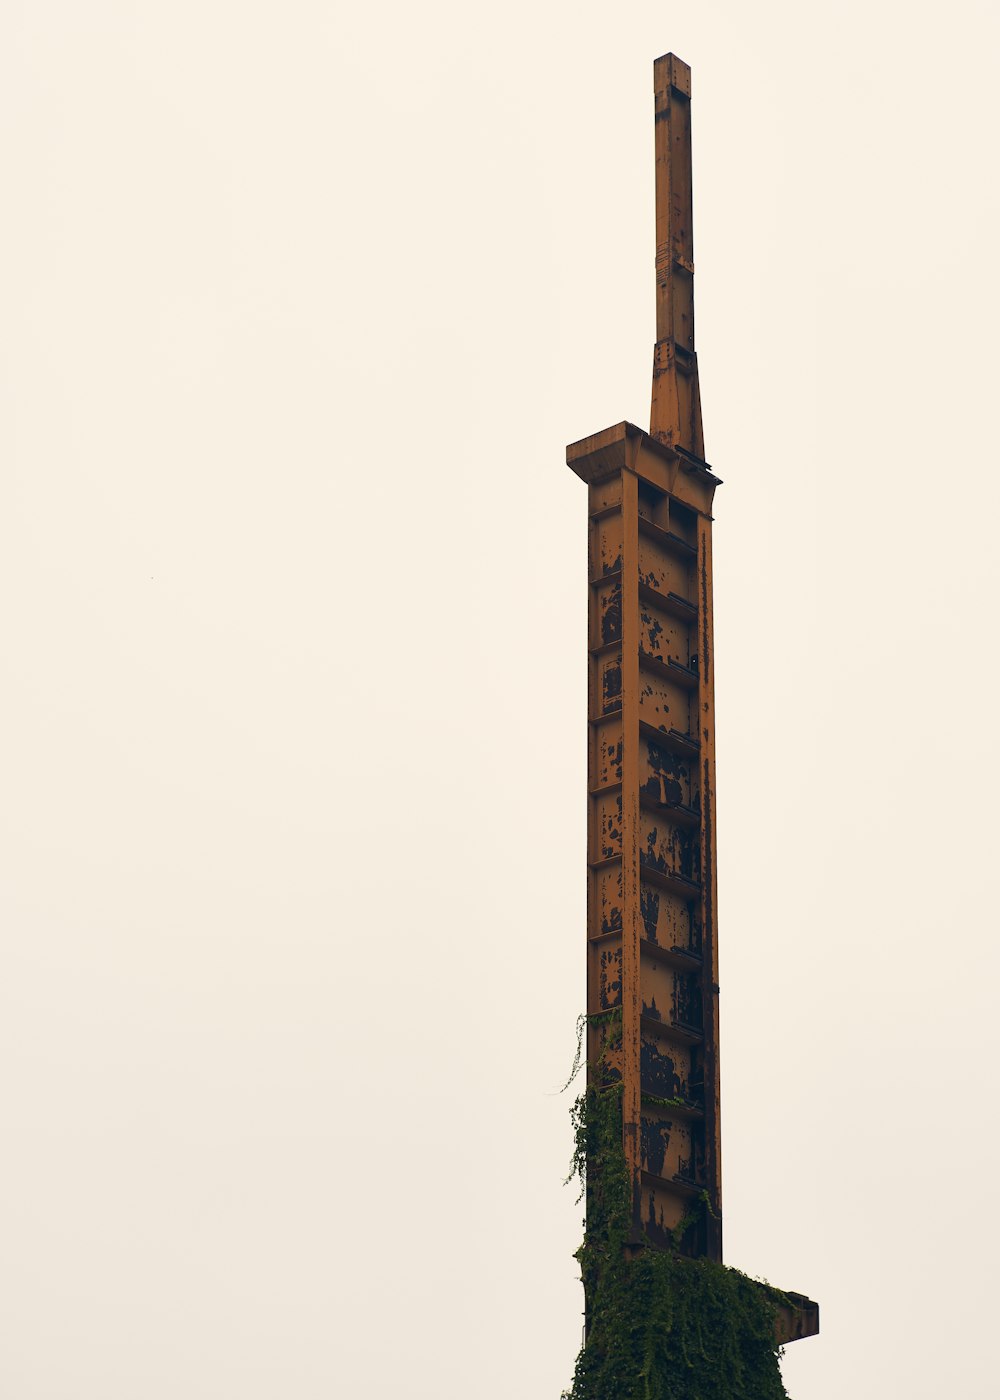 uma torre muito alta com um relógio de lado